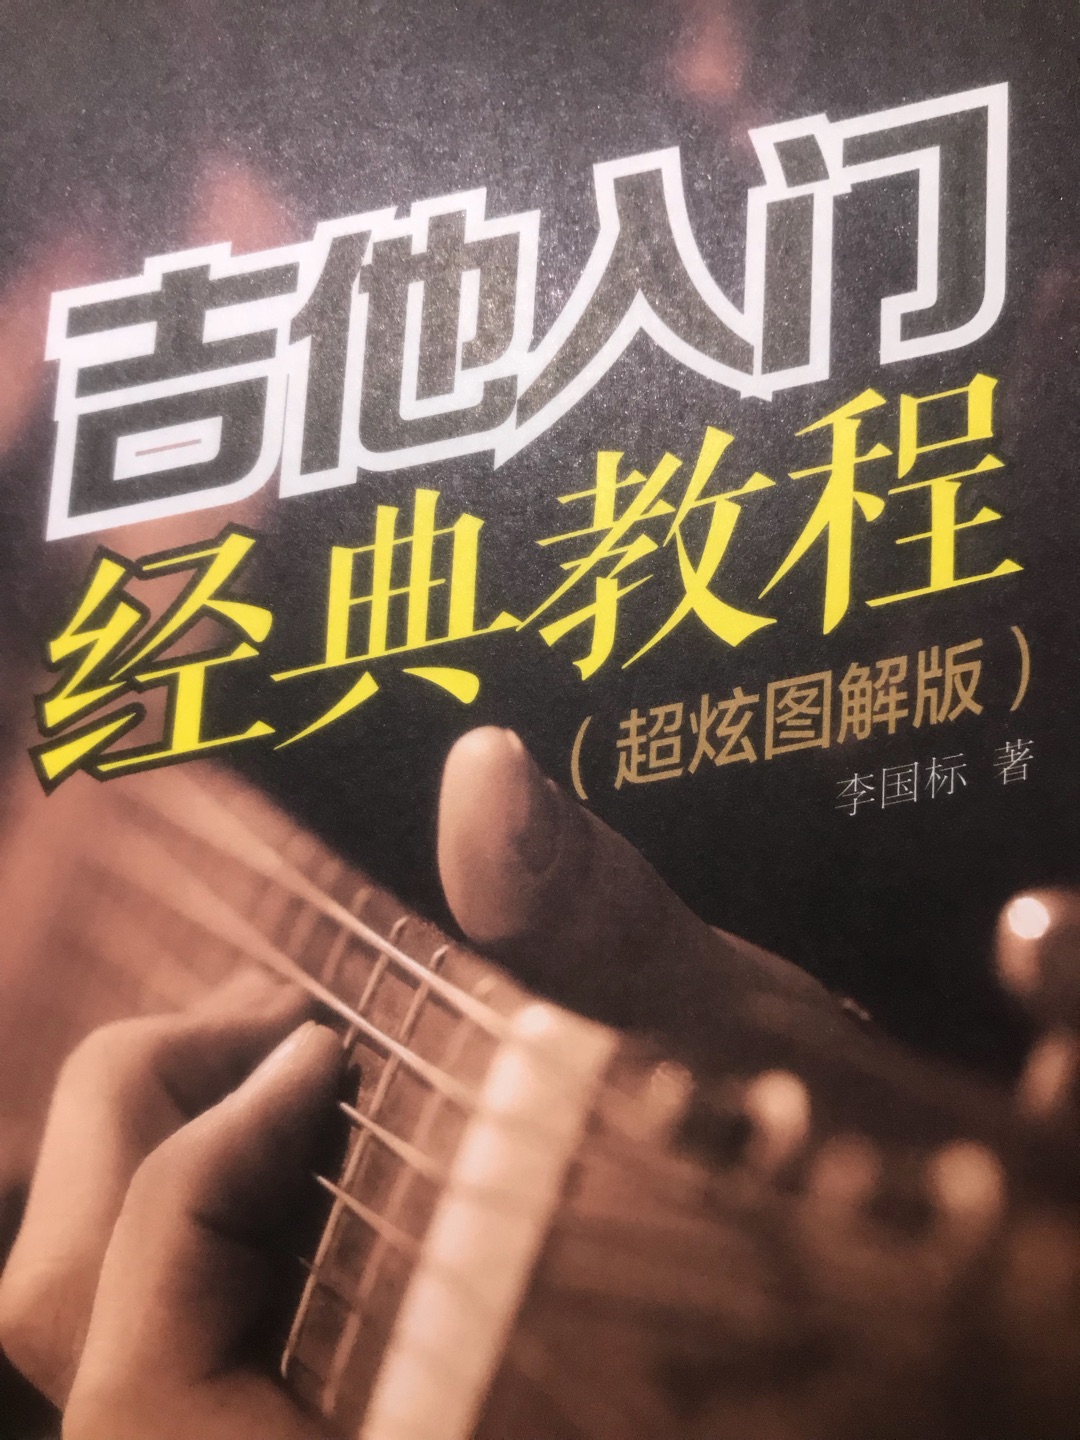 这本经典教学书对于小白来说很值得看，讲的简单易懂！本人也是个小白刚学习吉他。值得推荐！